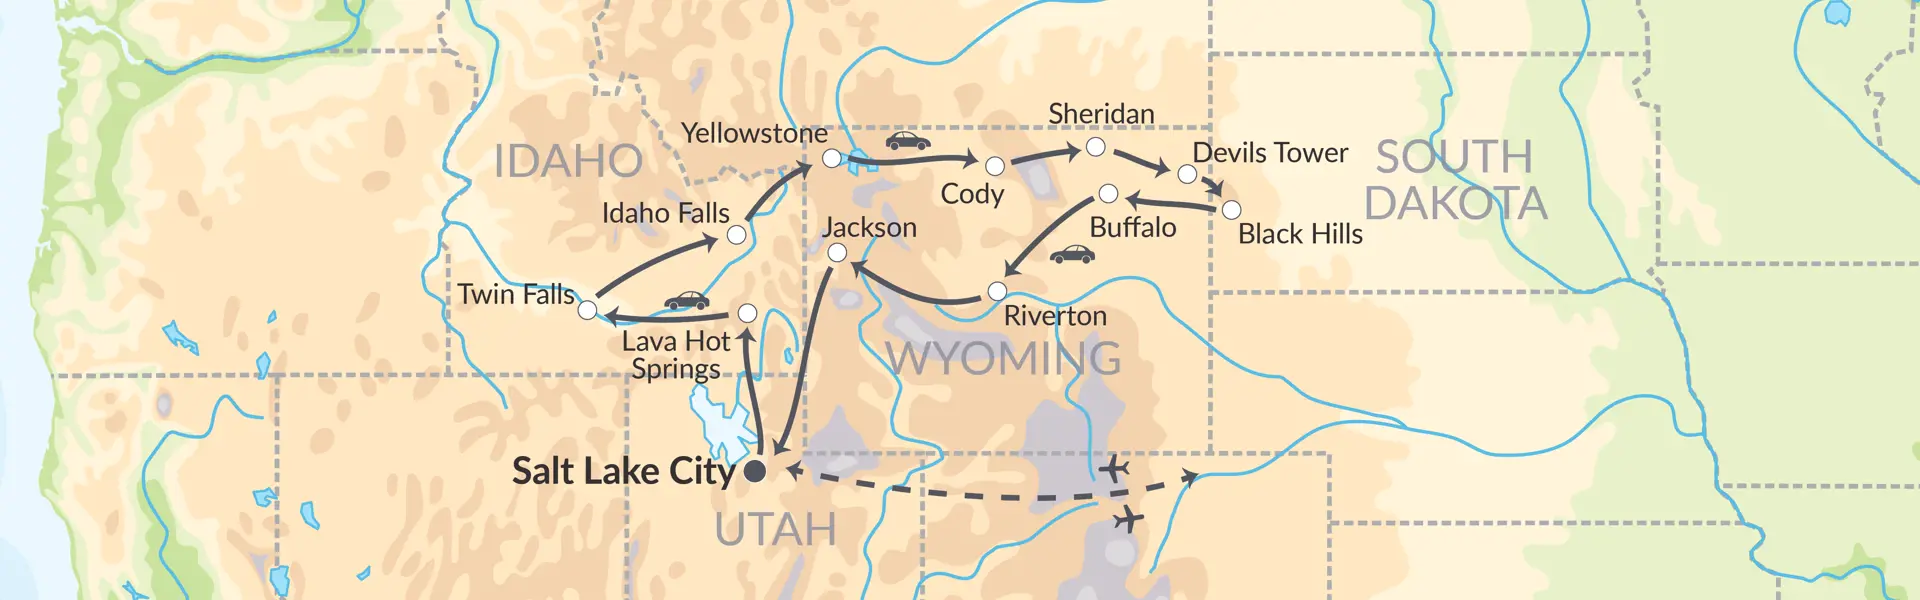 81363 Kom Tæt På 4 Præsidenter, Yellowstone & Buffalo Bill